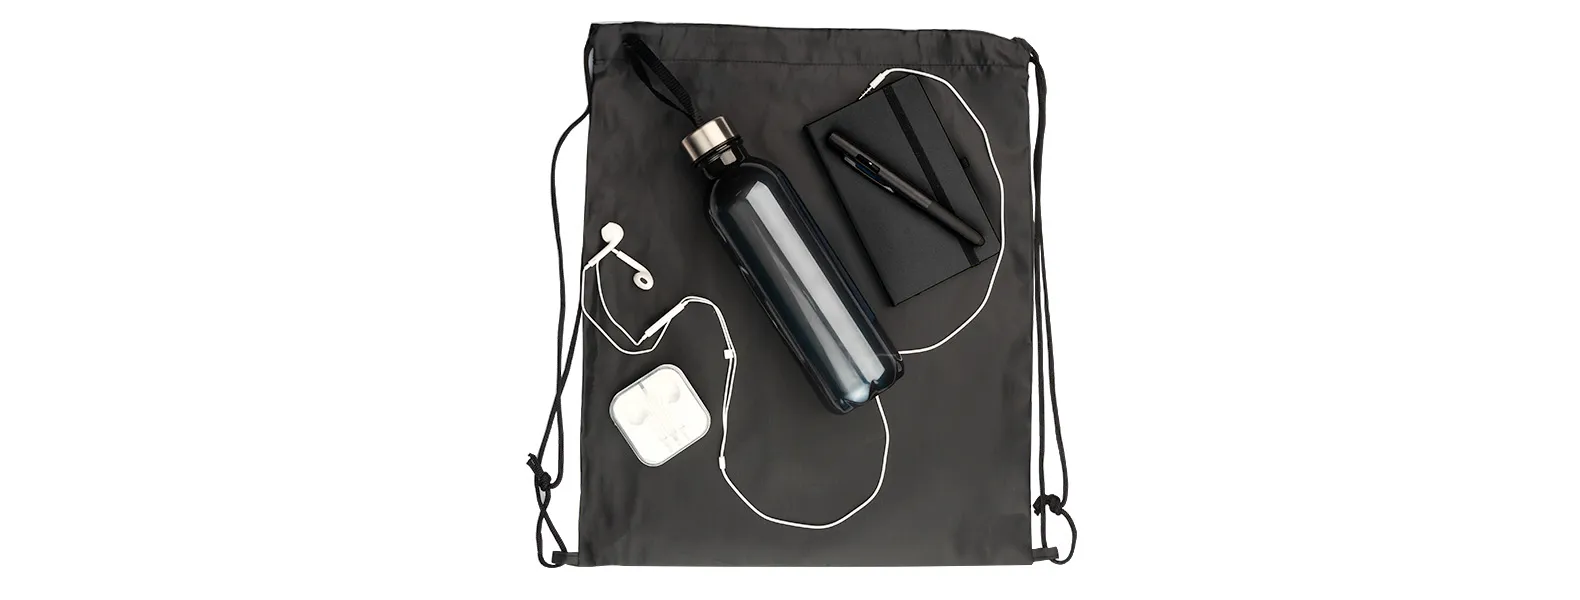 Kit boas vindas. Conta com mochila em nylon 420, garrafa pet, fone de ouvido, caderno sem pauta e caneta esferográfica com tampa e ponta touch.